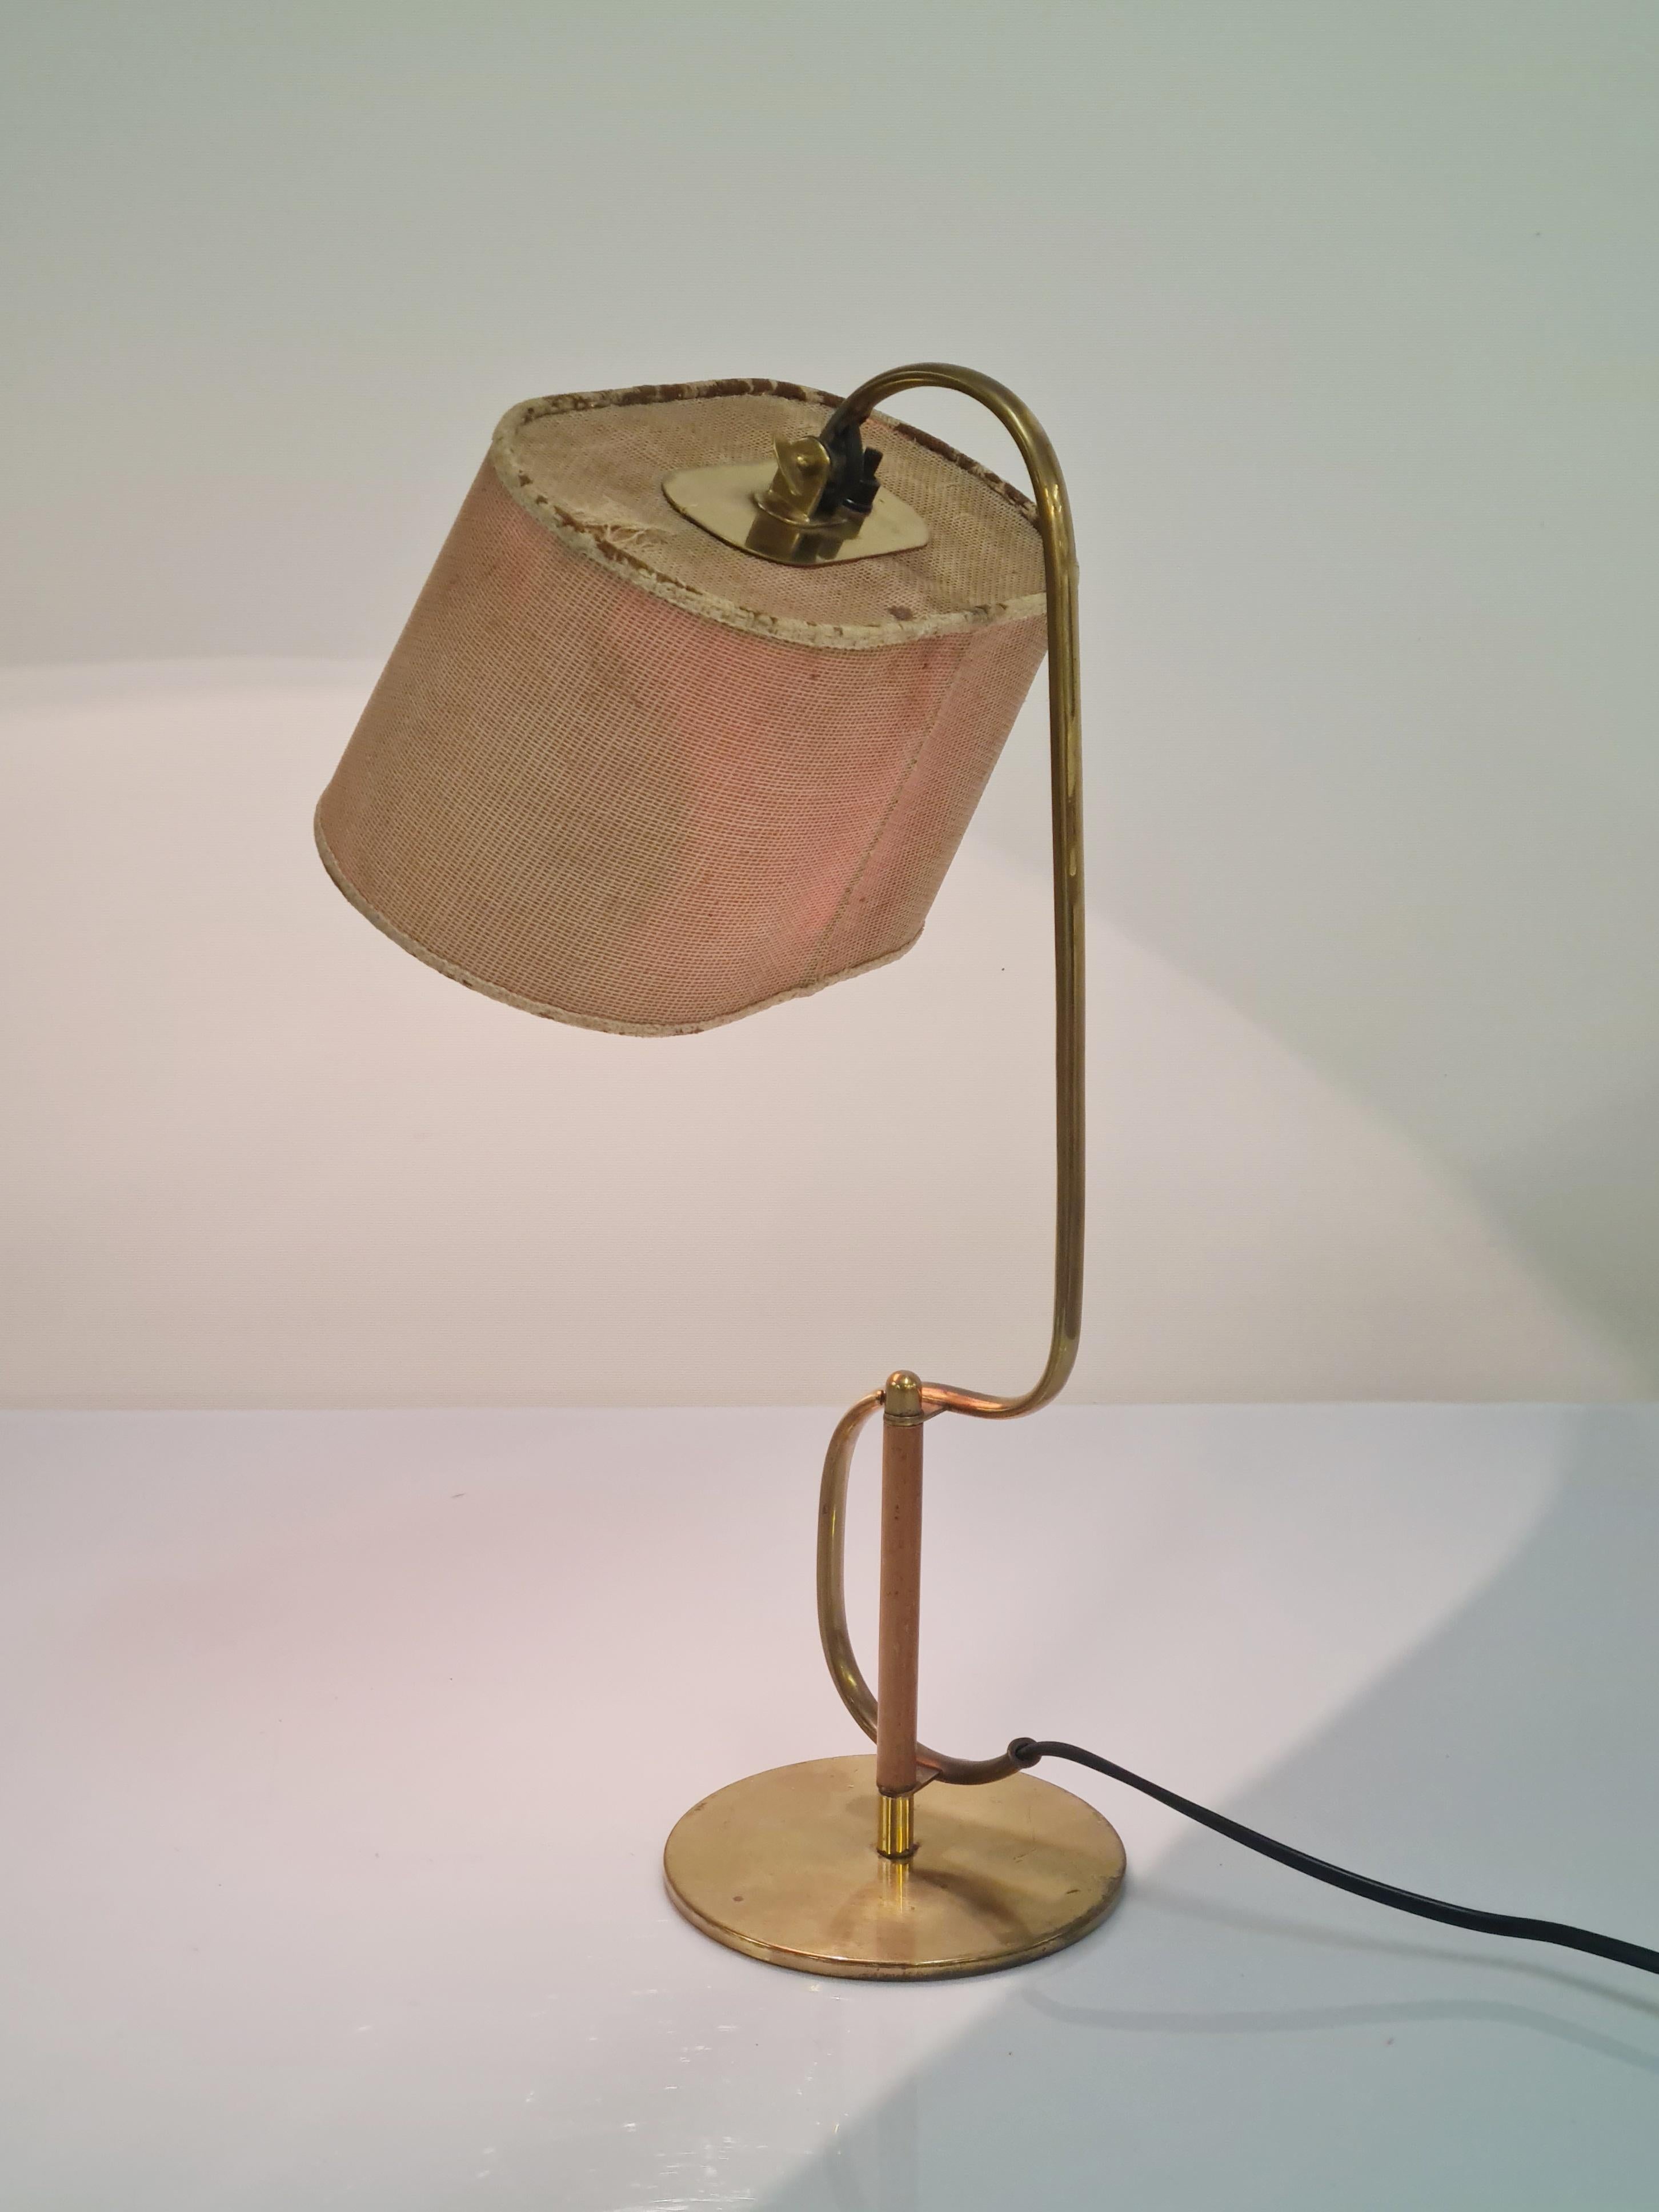 Une lampe de table incroyablement belle du maître du design des luminaires Paavo Tynell. Cette lampe n'est pas seulement élégante et très différente des autres lampes de table standard de Tynell, elle est aussi très rare. C'est le deuxième exemple